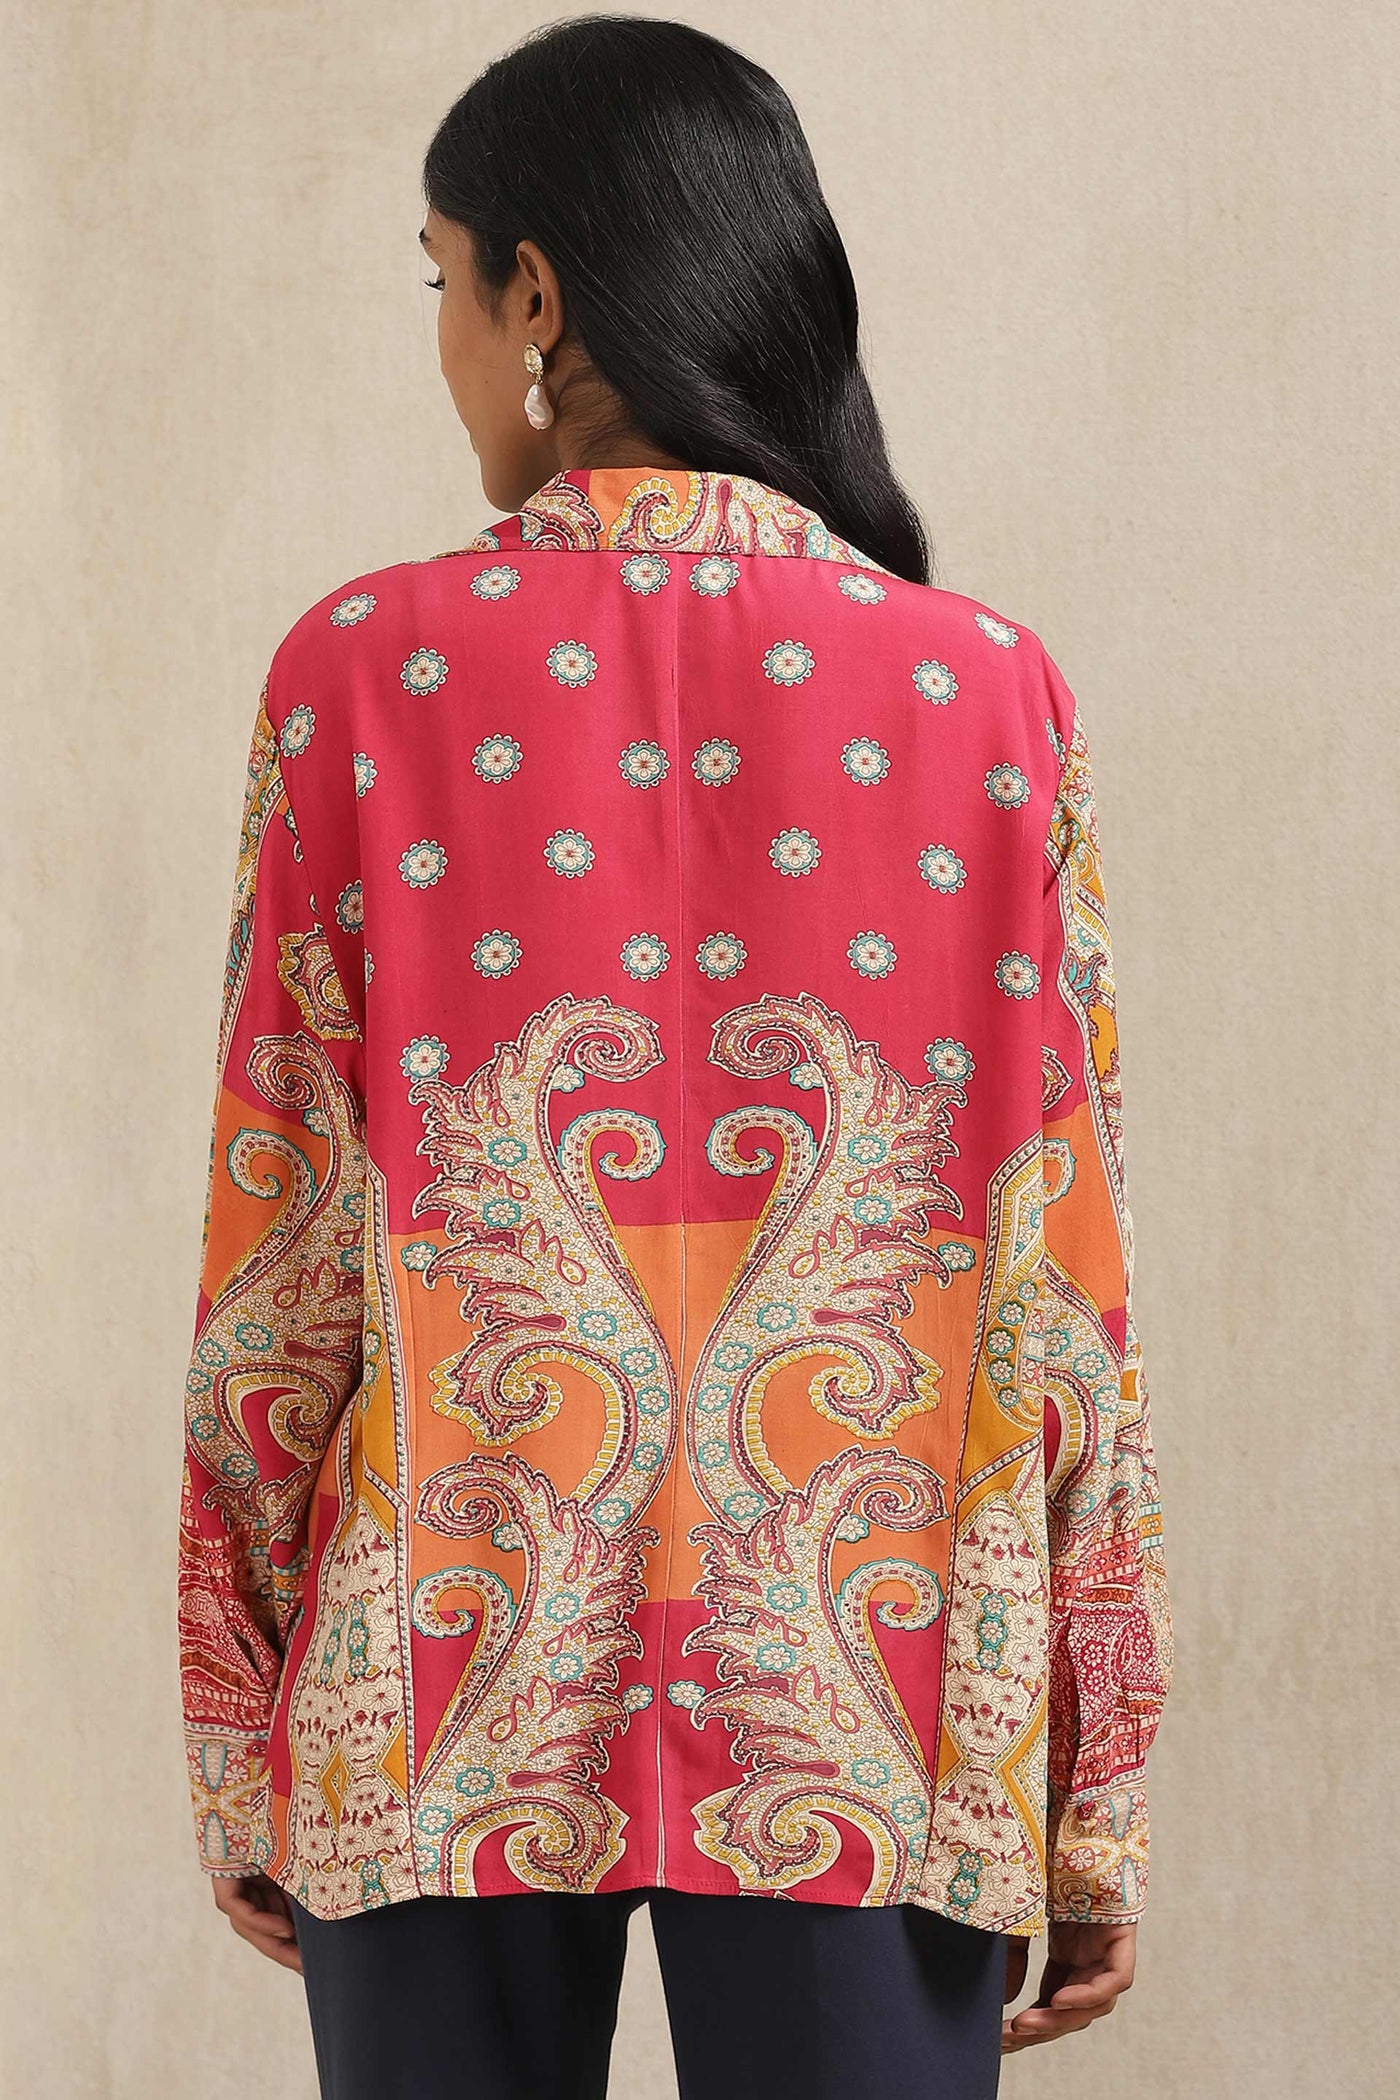 ritu kumar Red Printed Shirt online shopping melange singapore indian designer wear